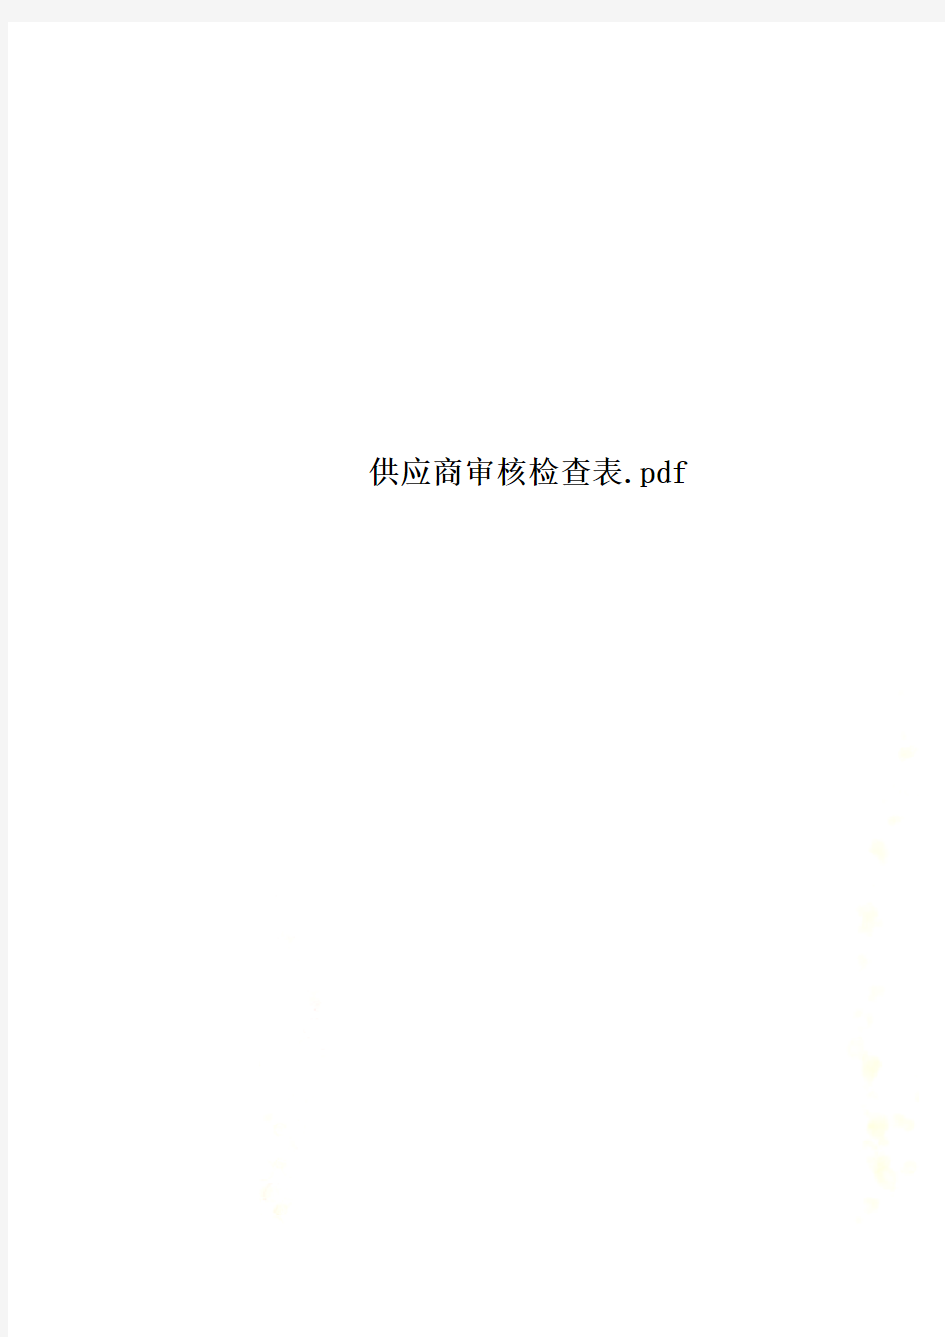 供应商审核检查表.pdf